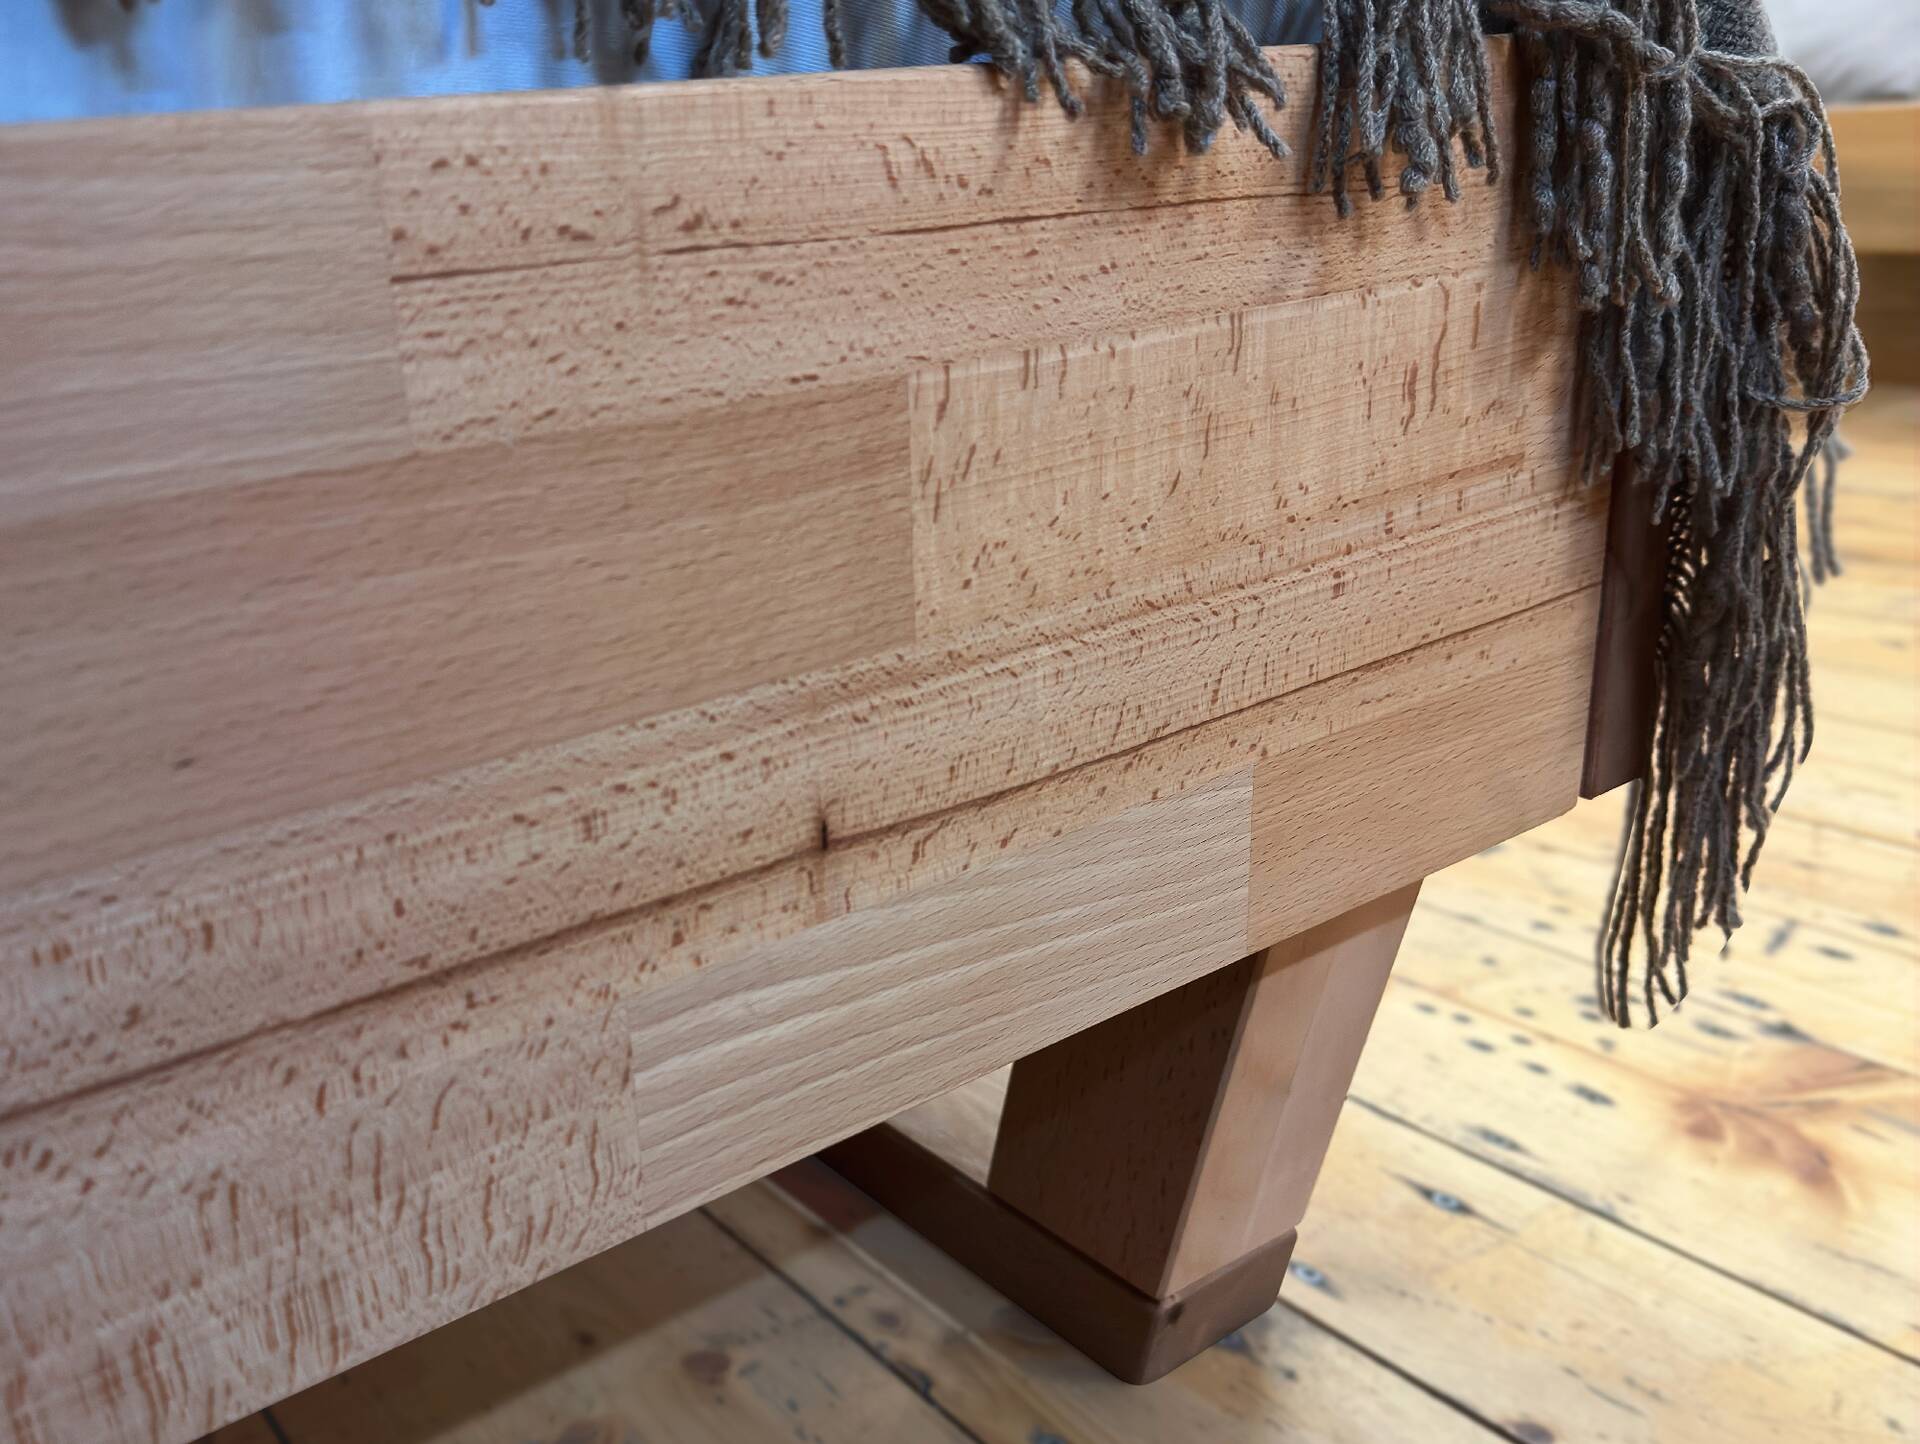 LÖWEN Holz-Kufenbett/Massivholzbett mit Polsterkopfteil 160 x 200 cm | Buche unbehandelt | Kunstleder Braun ohne Steppung